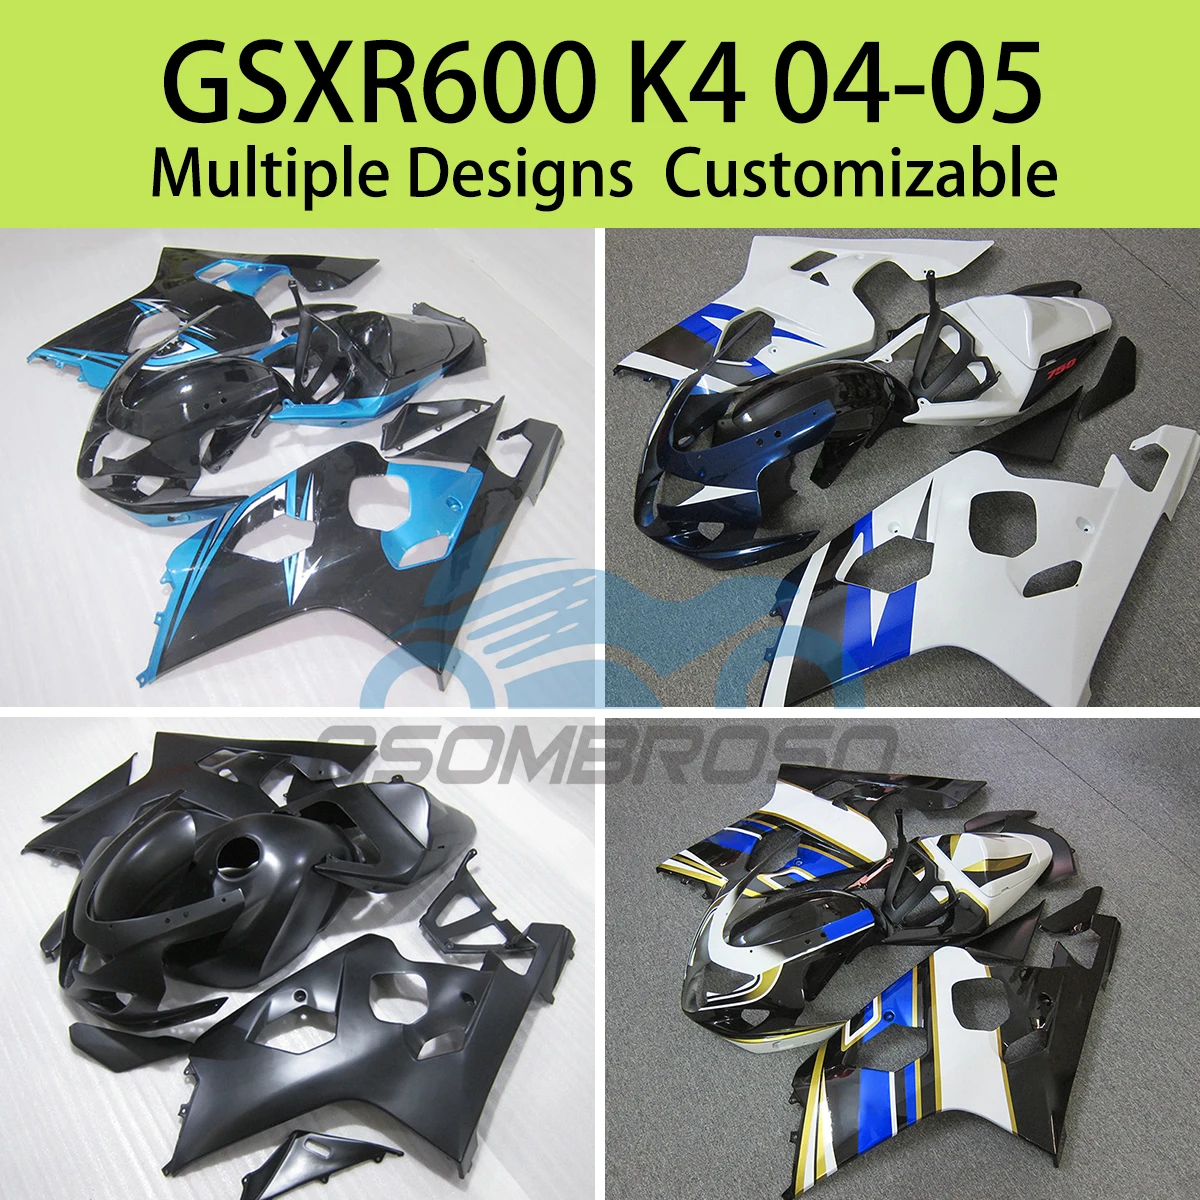 

GSXR 600 750 04 05 Motorcycle Fairings for SUZUKI GSXR600 GSXR750 K4 2004 2005 ABS Injection Complete Fairing Bodywork Kit